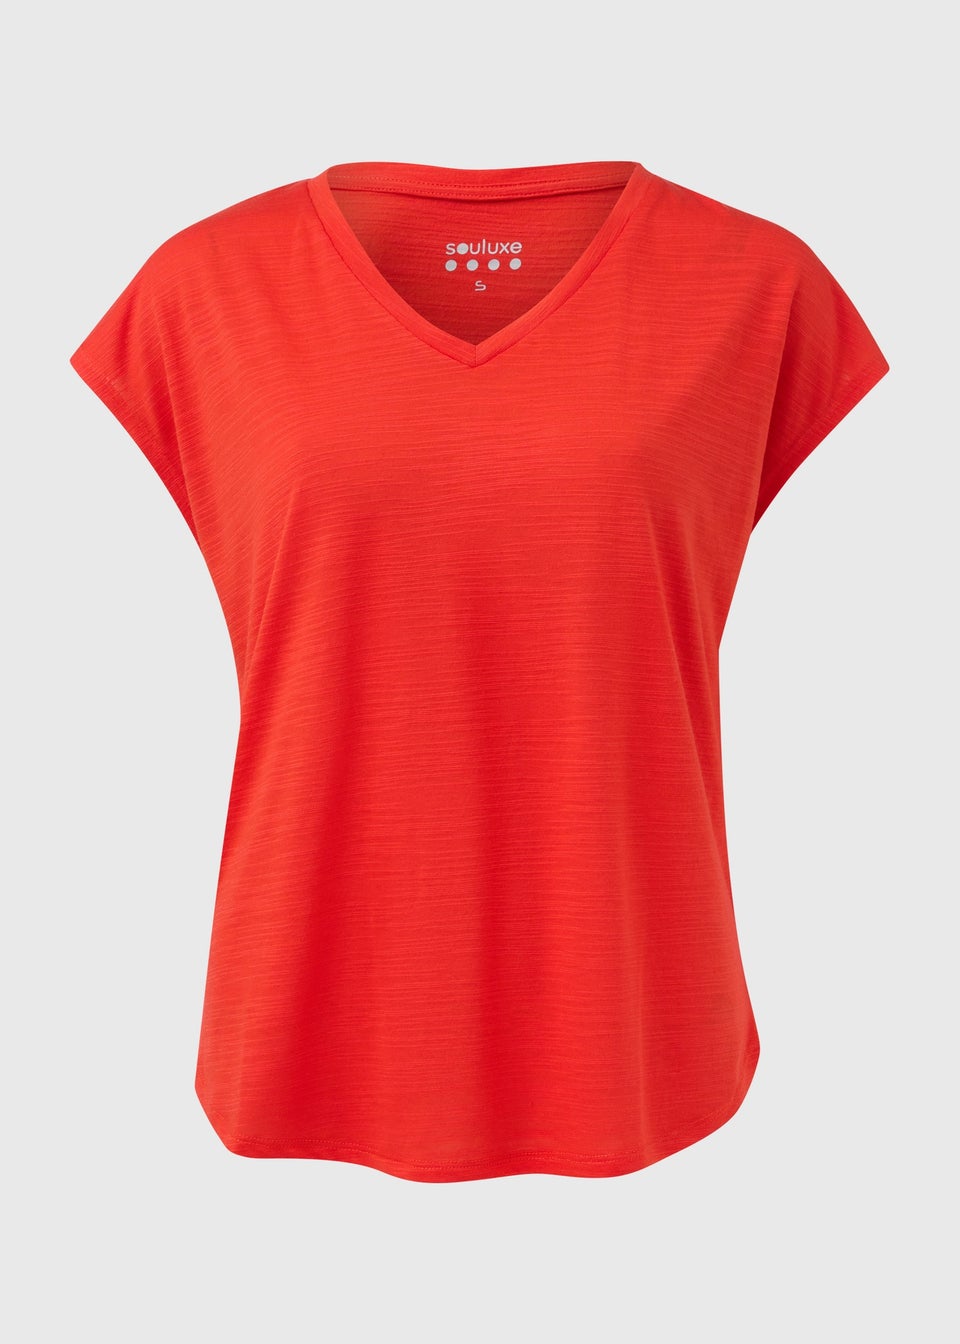 Souluxe Orange V-Neck T-Shirt